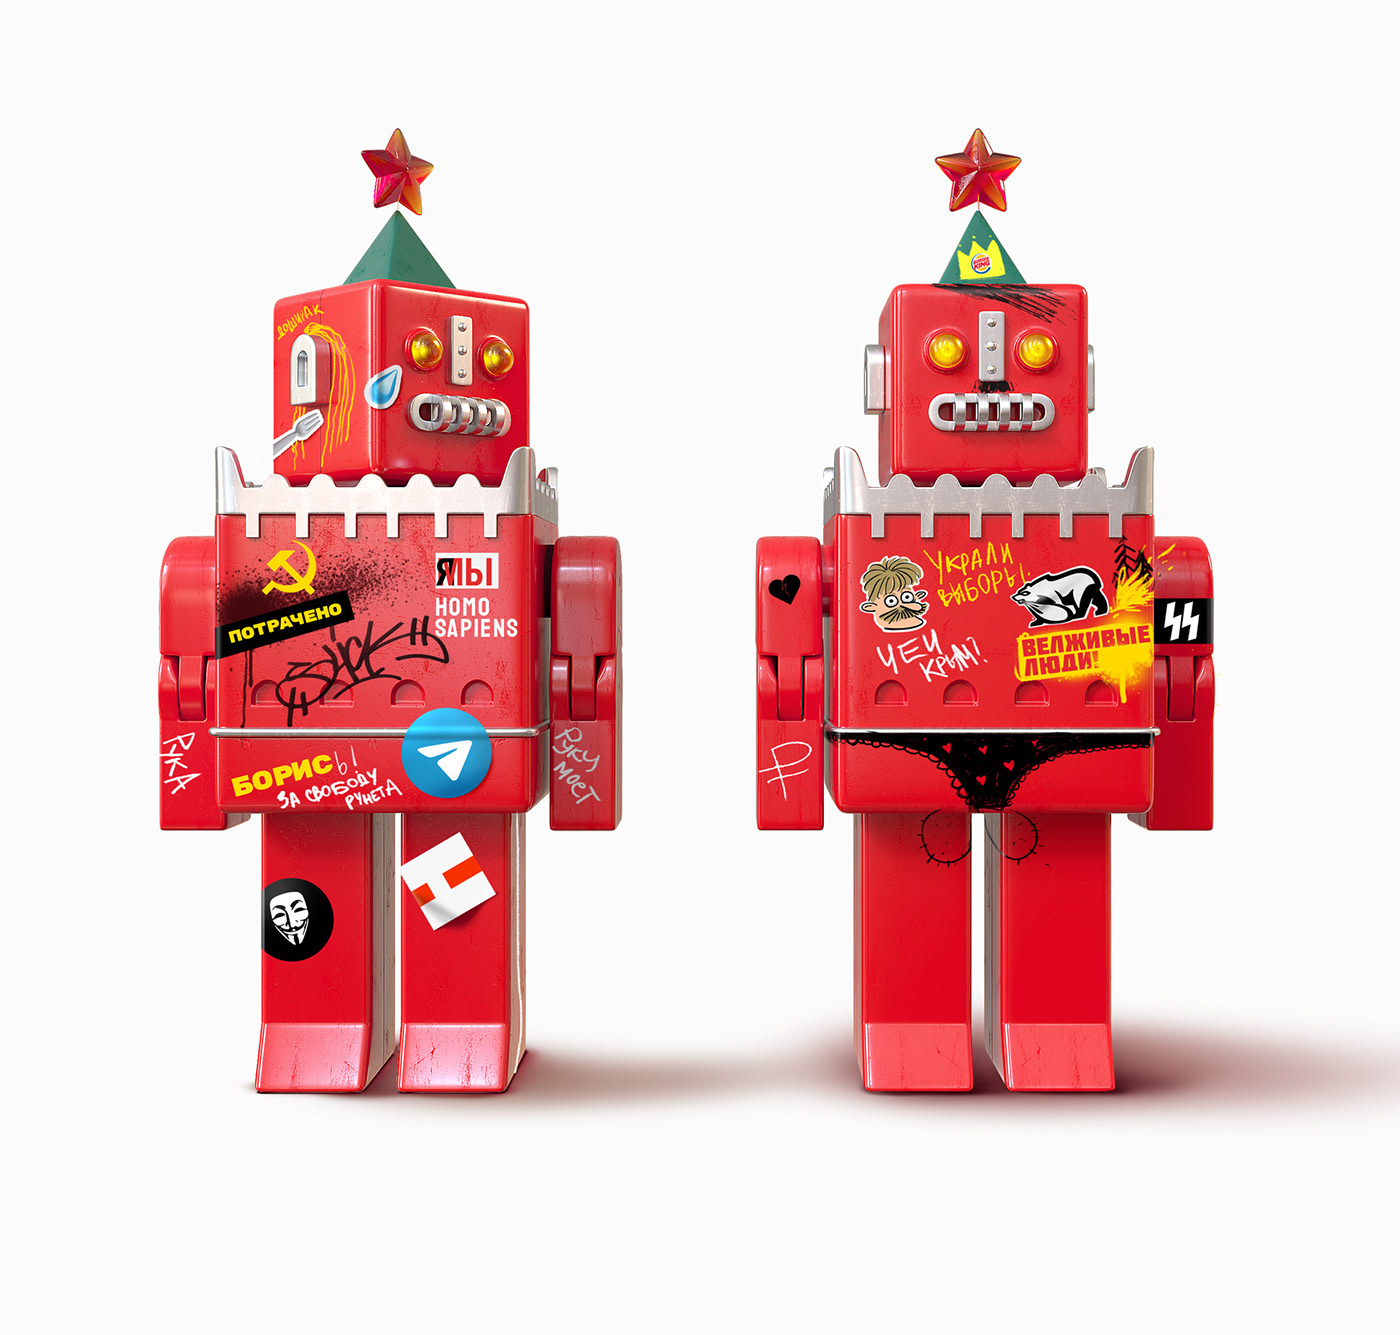 KREMLEBOT NOVALNIY robot TRANSFORVTR toy design  Kremlin Moscow putin provocation